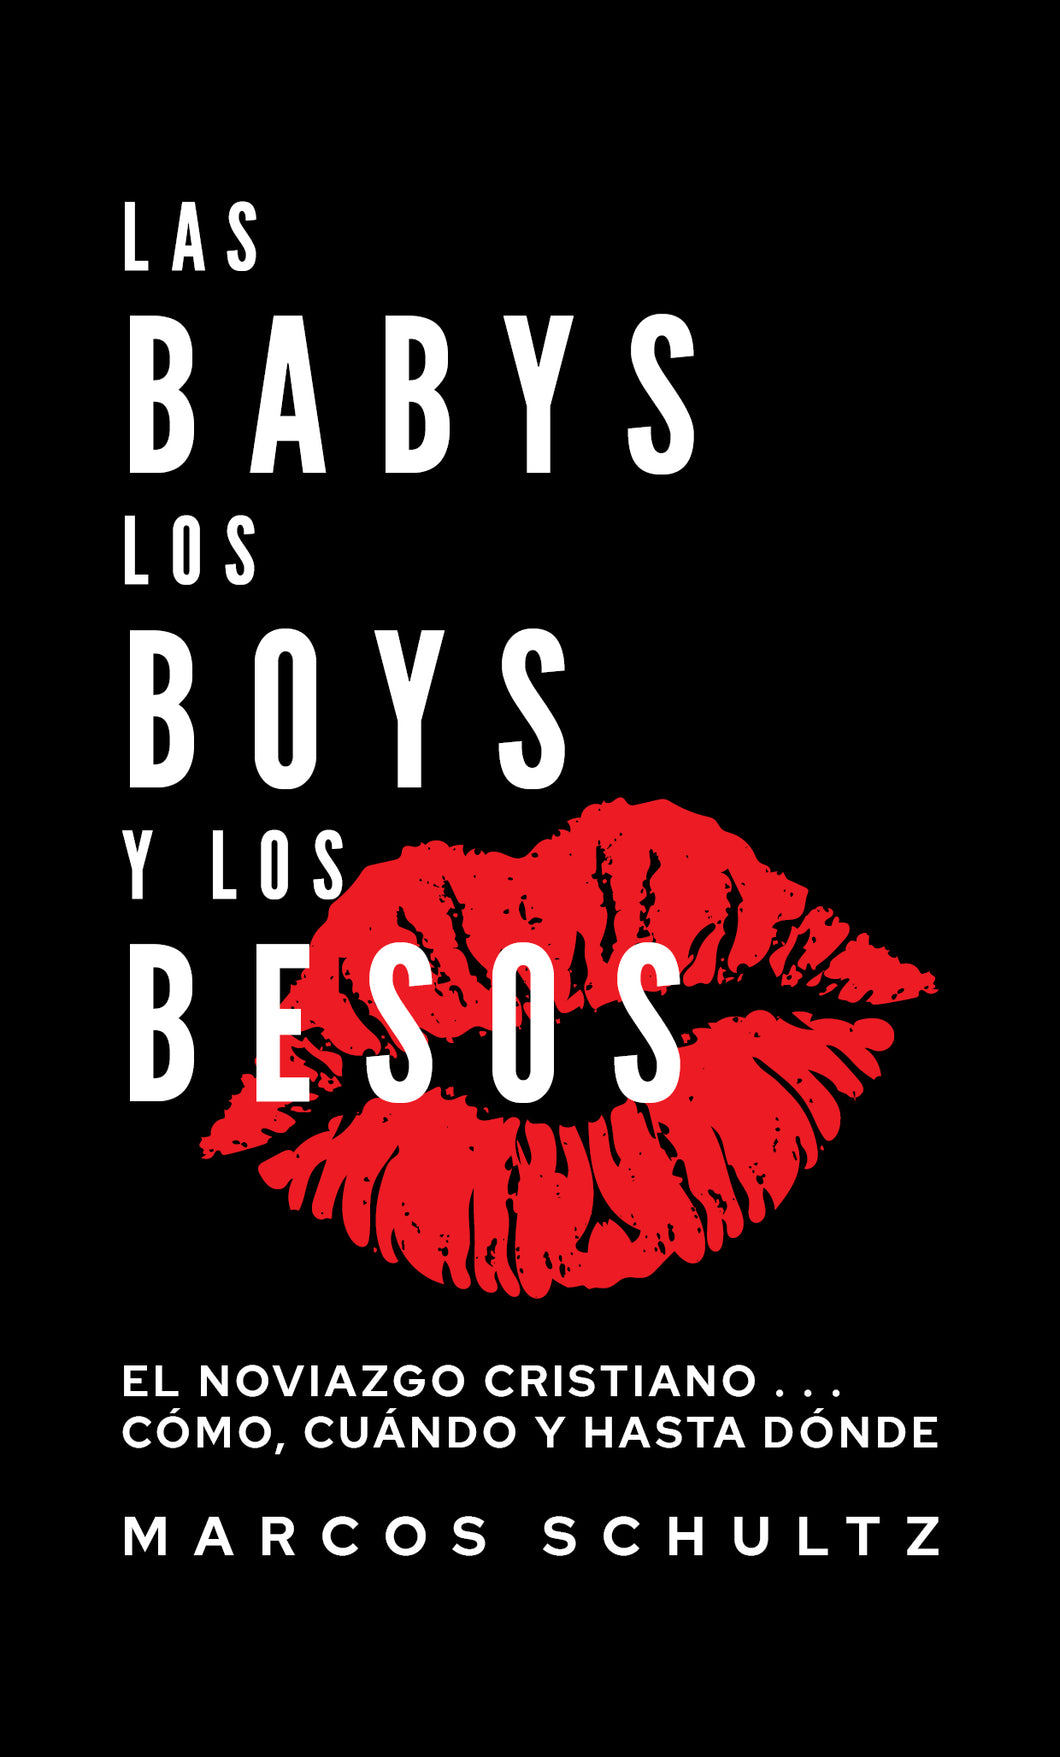 Las Babys, Los Boys, y los Besos - Marcos Schultz